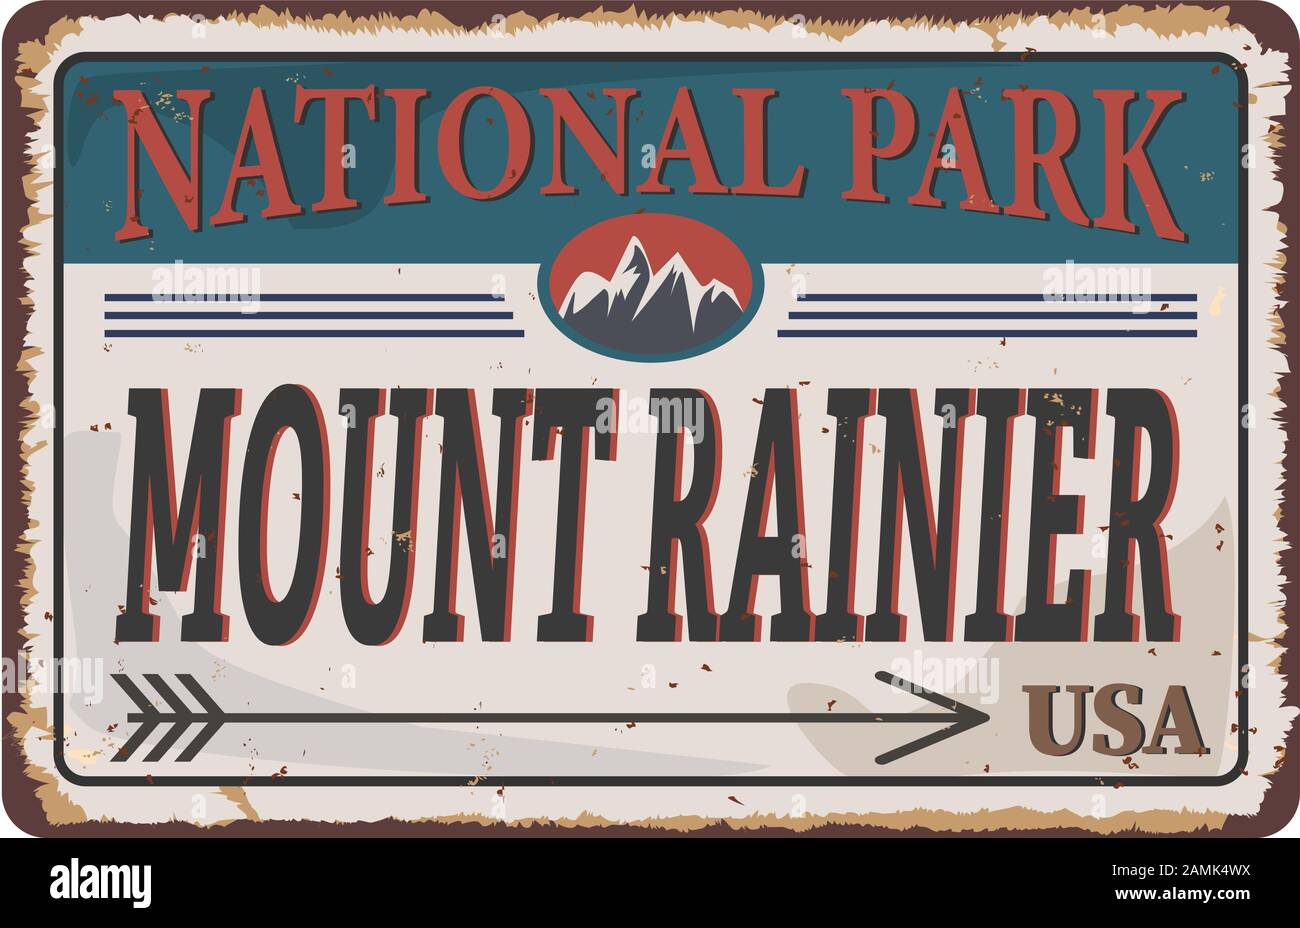 Mount Rainier National Park, USA avventura all'aperto rustet mtal segno illustrazione Illustrazione Vettoriale